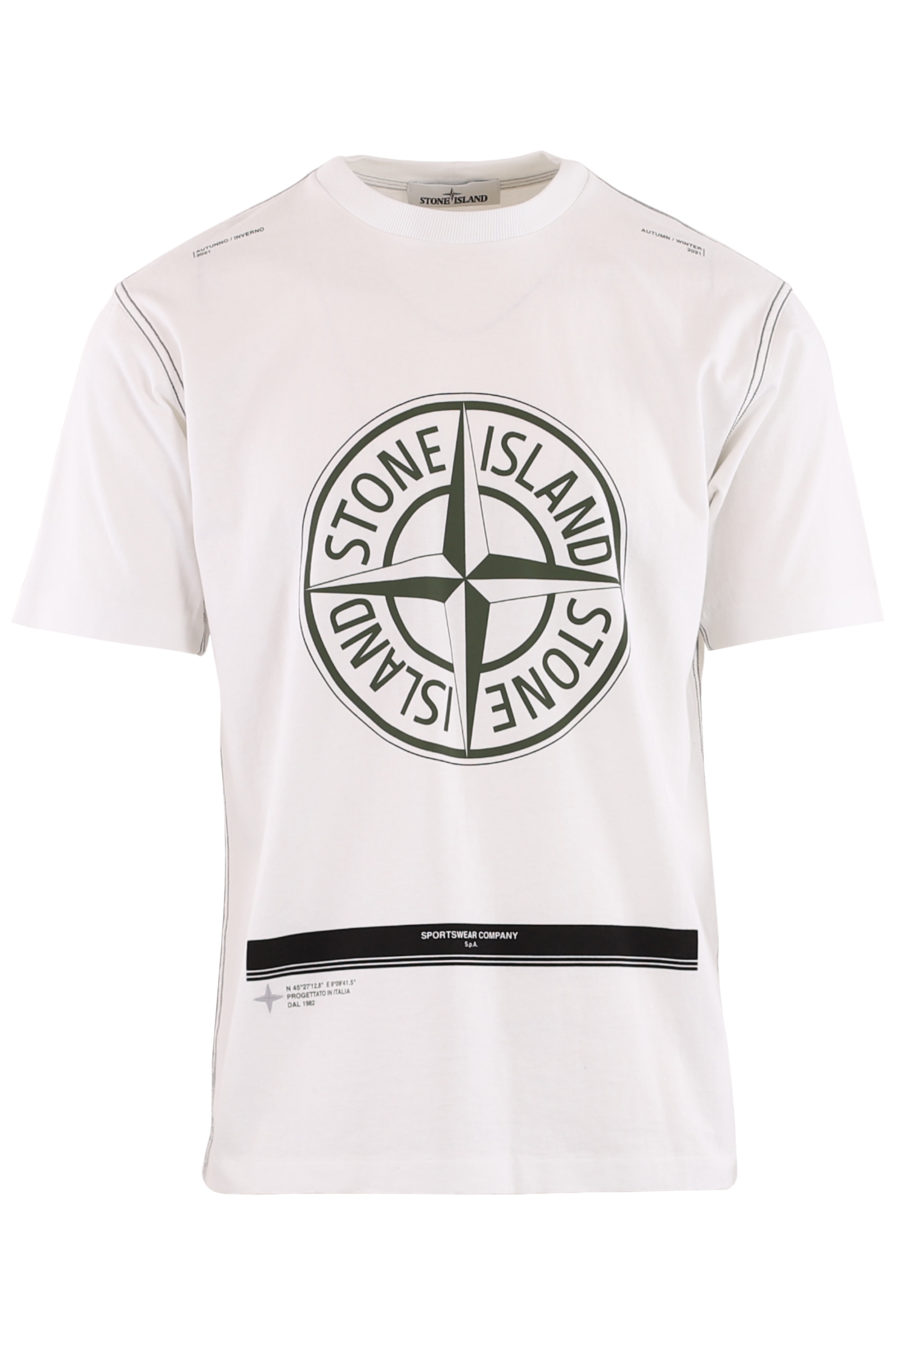 Camiseta blanca con logo estampado grande y rayas verdes - 8cfa76586706993a5d33a764d98fd7639bcb6edb